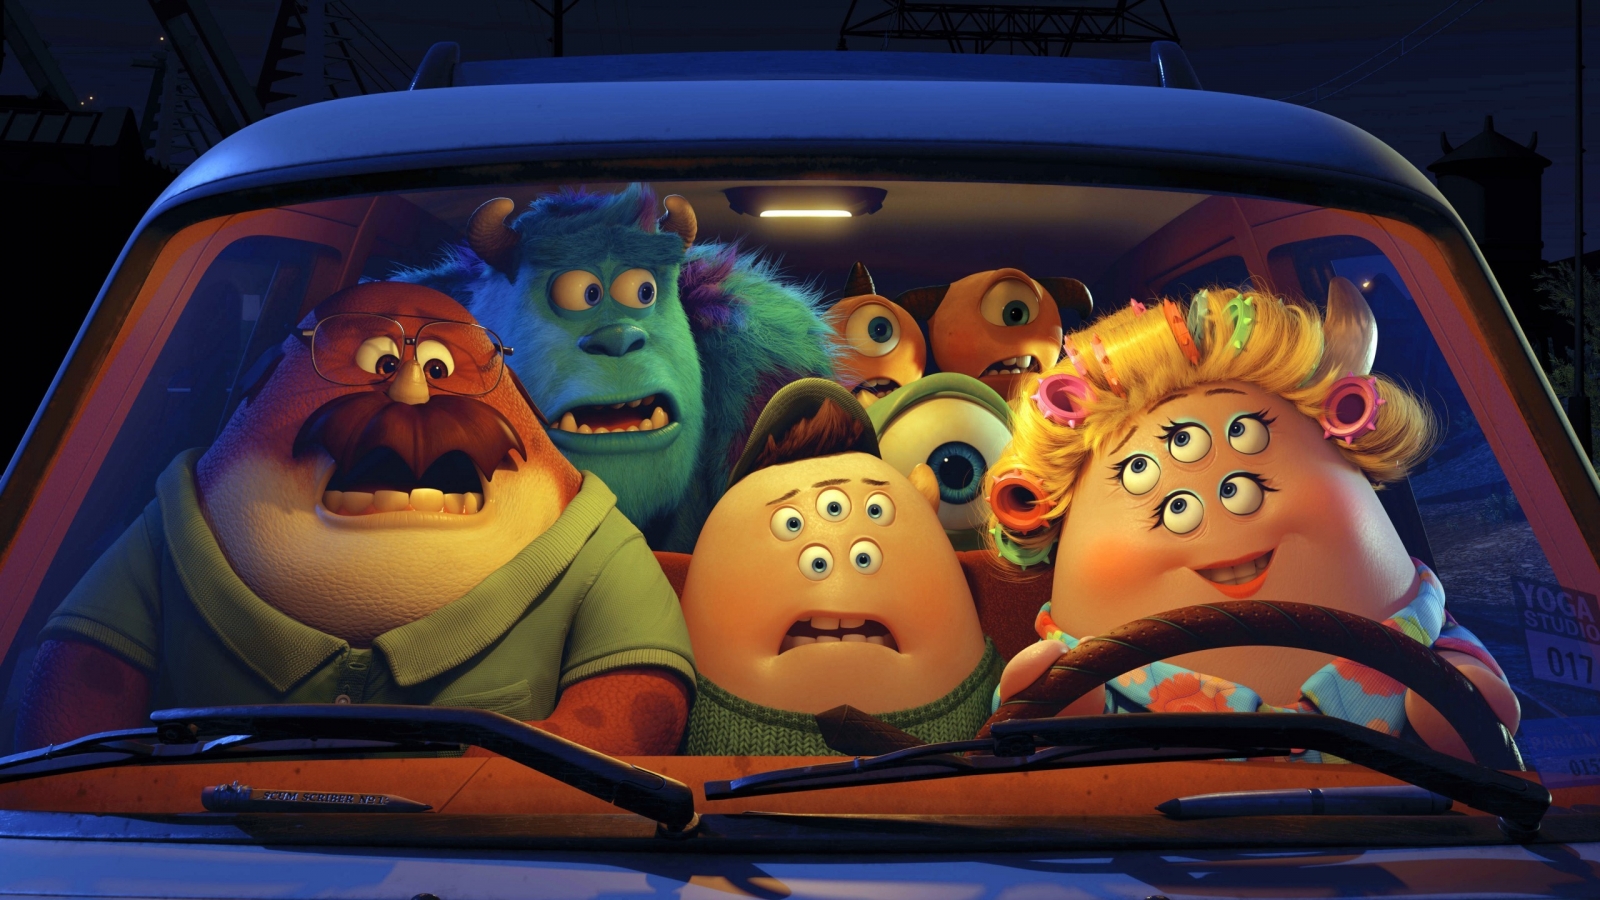 Pixar Monsters University Film for 1600 x 900 HDTV resolution